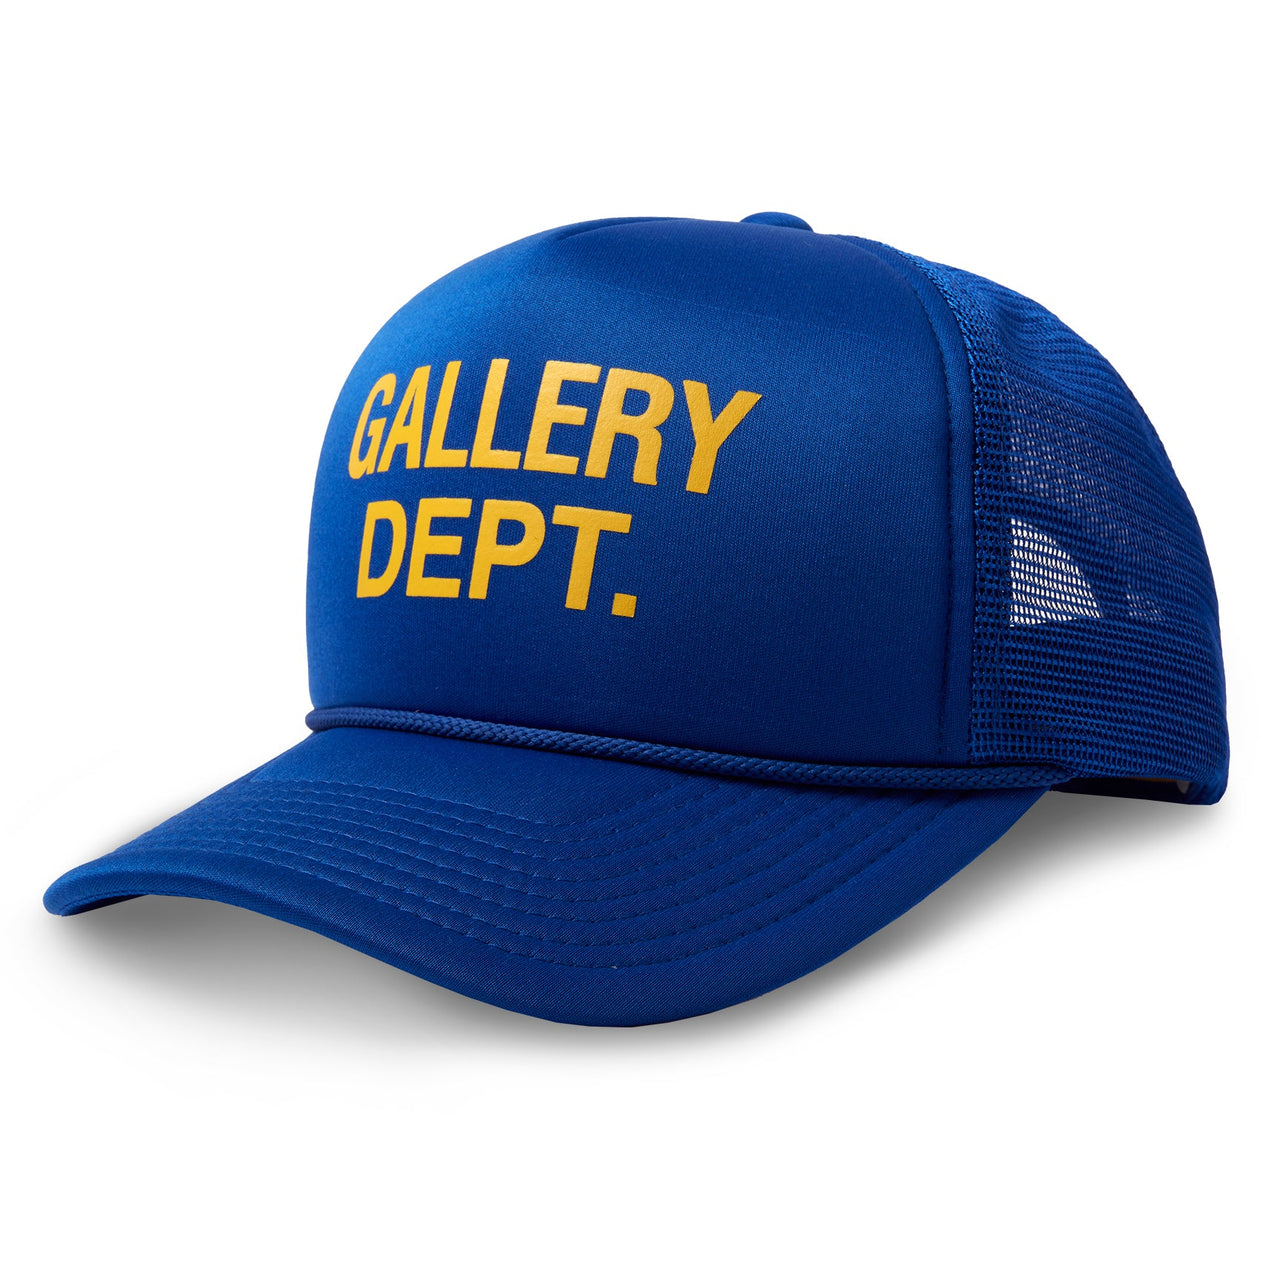 Gallery Dept. Logo Trucker Hat "Royal Blue"